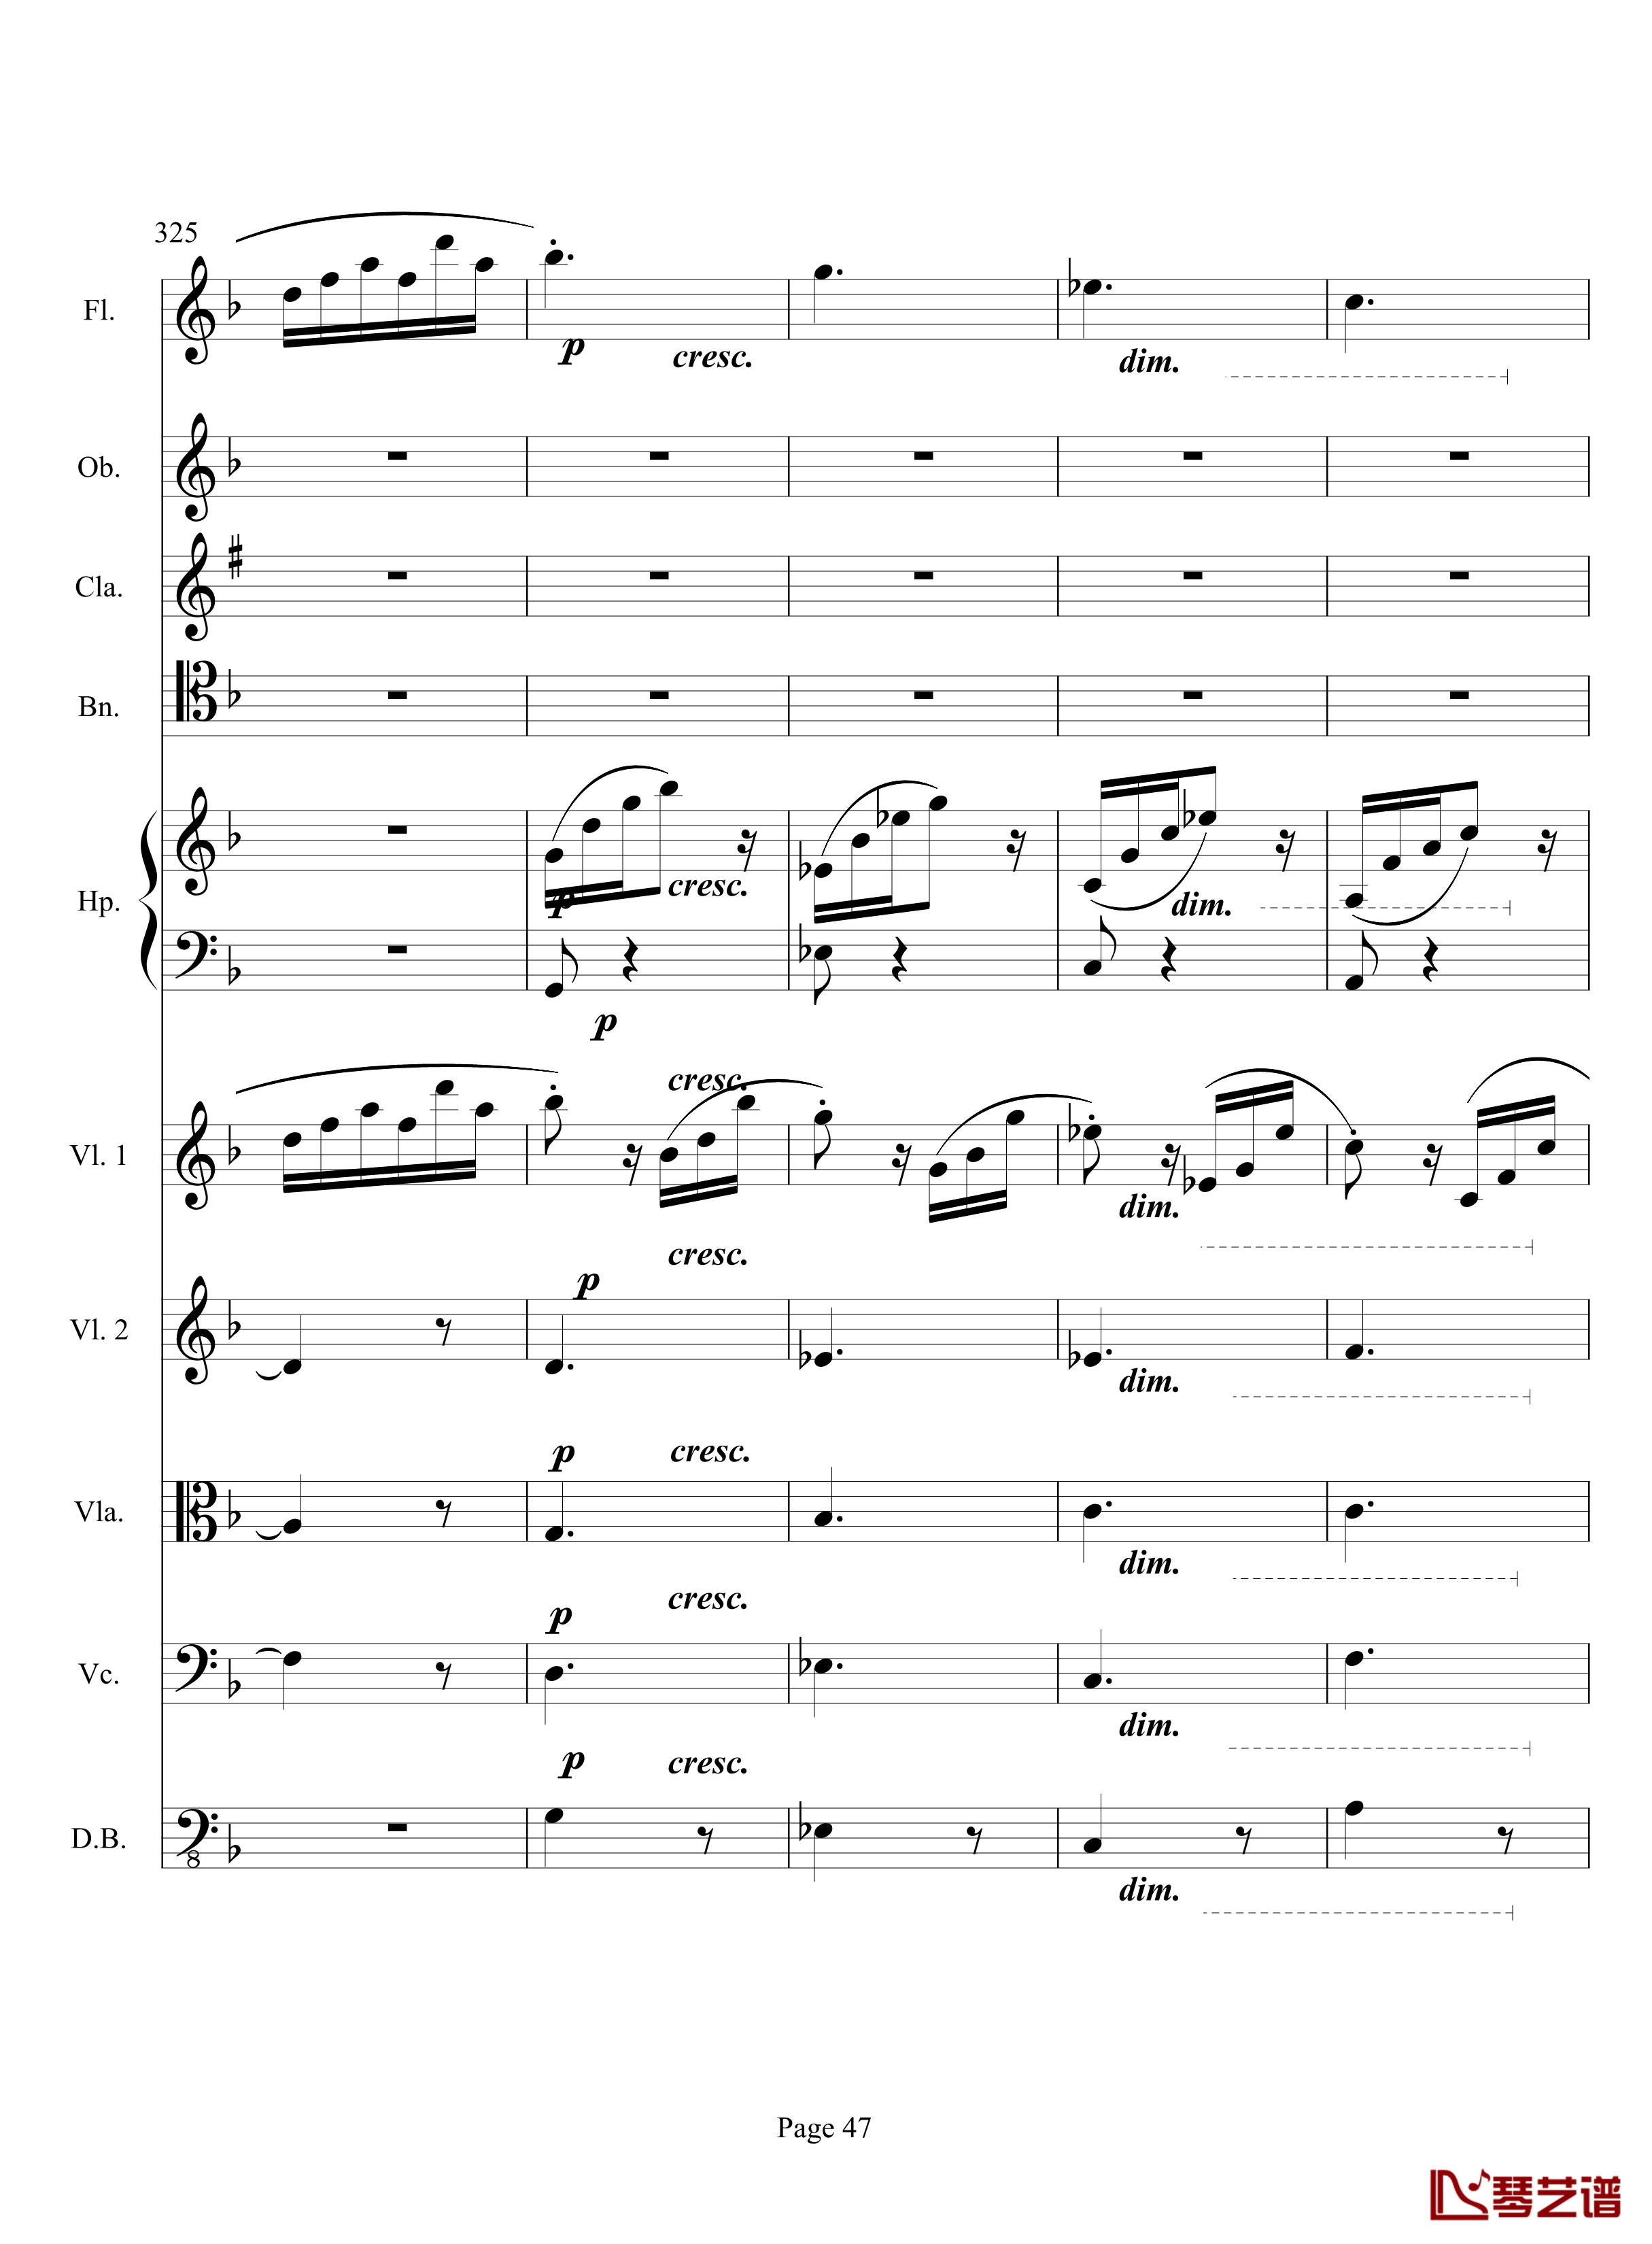 奏鸣曲之交响钢琴谱-第17首-Ⅲ-贝多芬-beethoven47